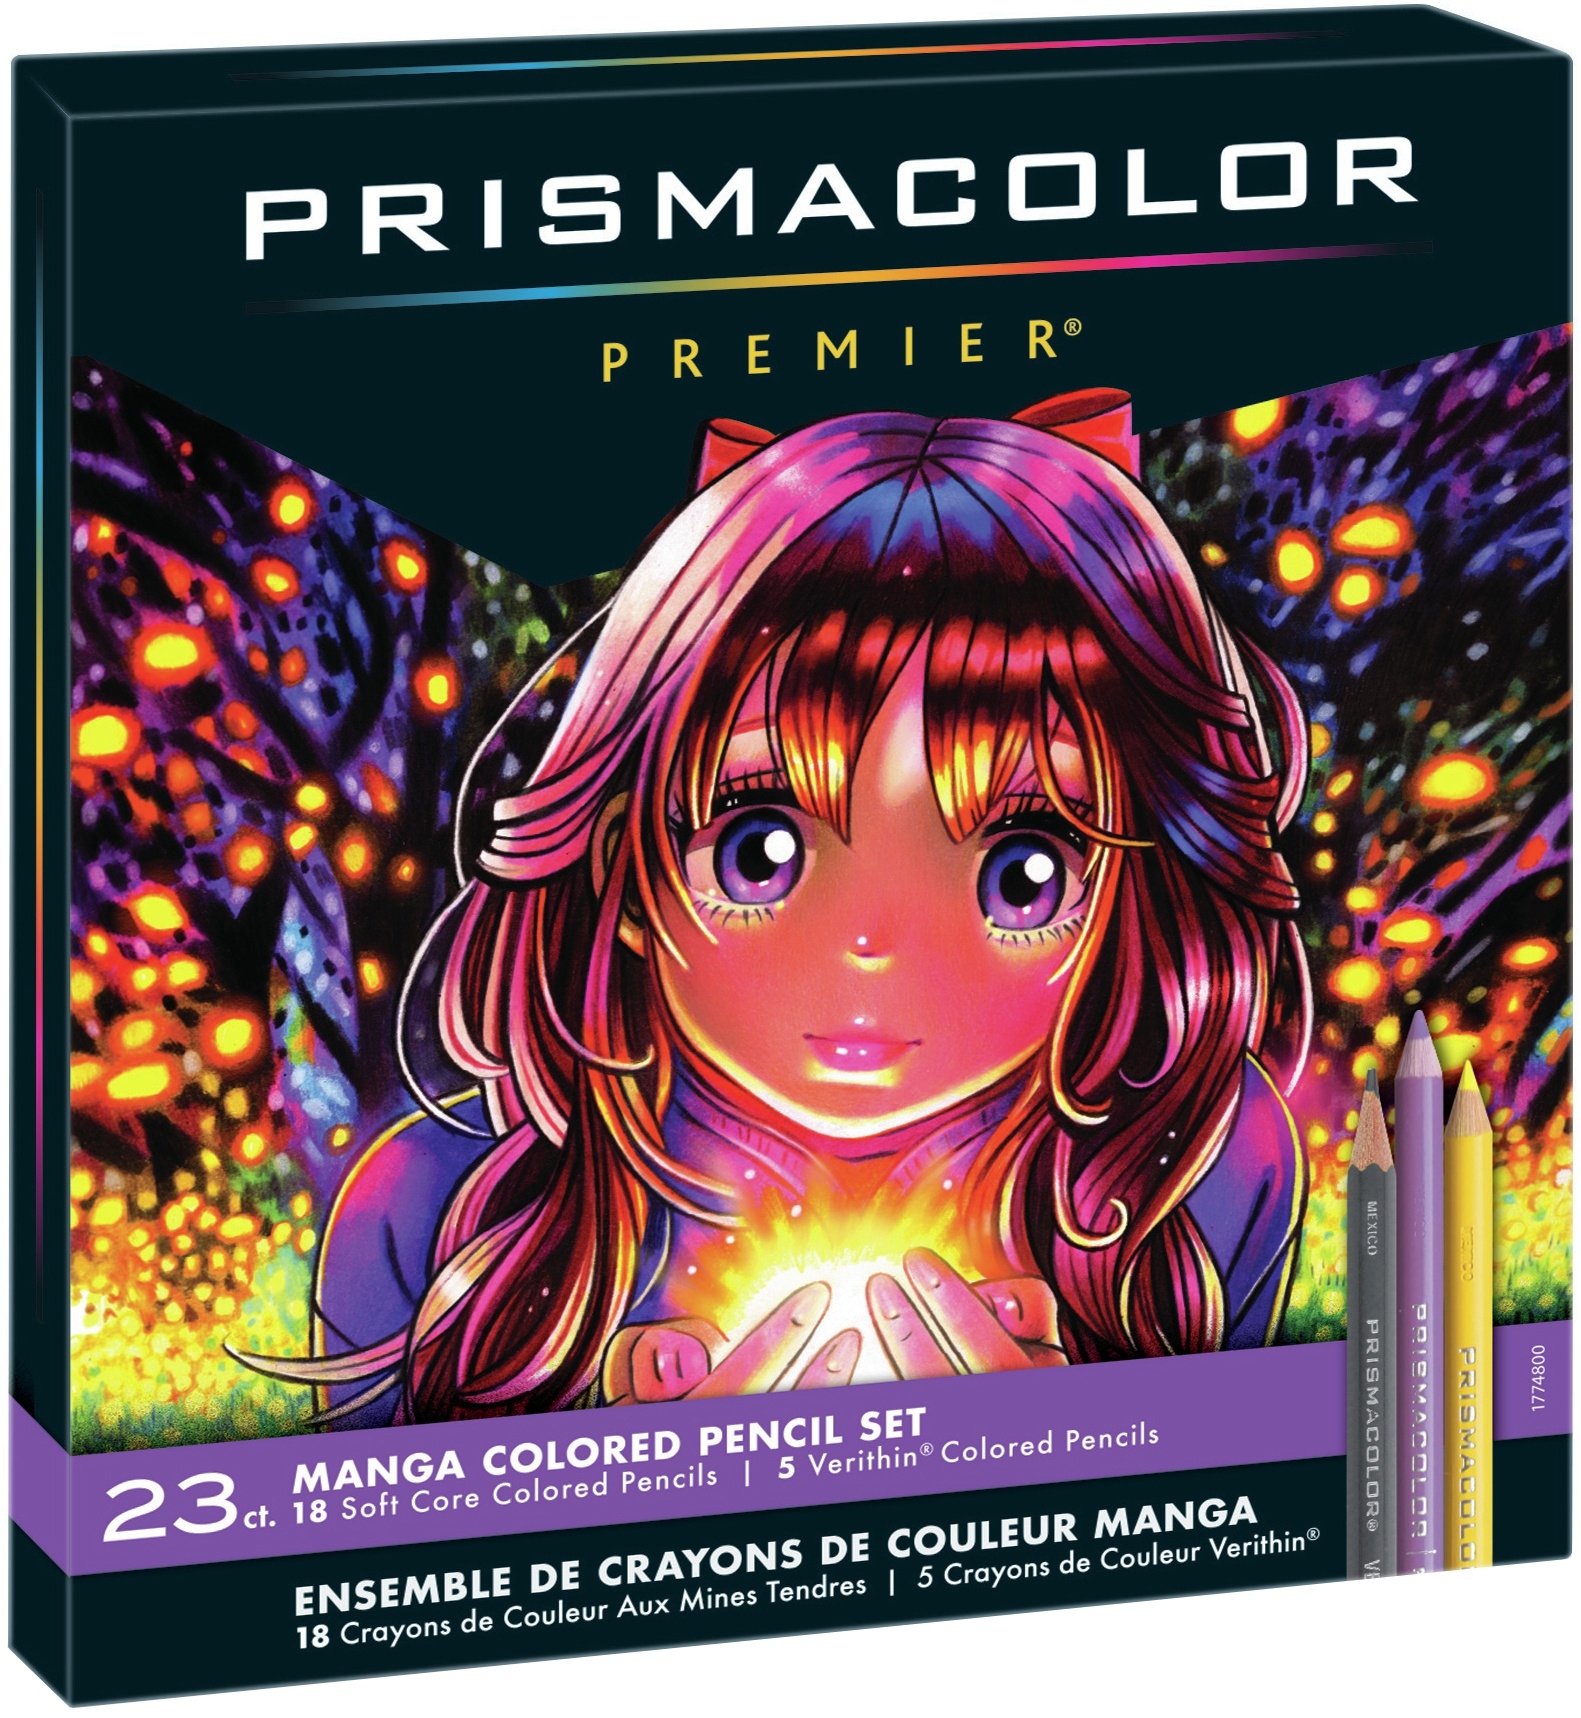 Set de 150 Lápices de Colores - Prismacolor Premier